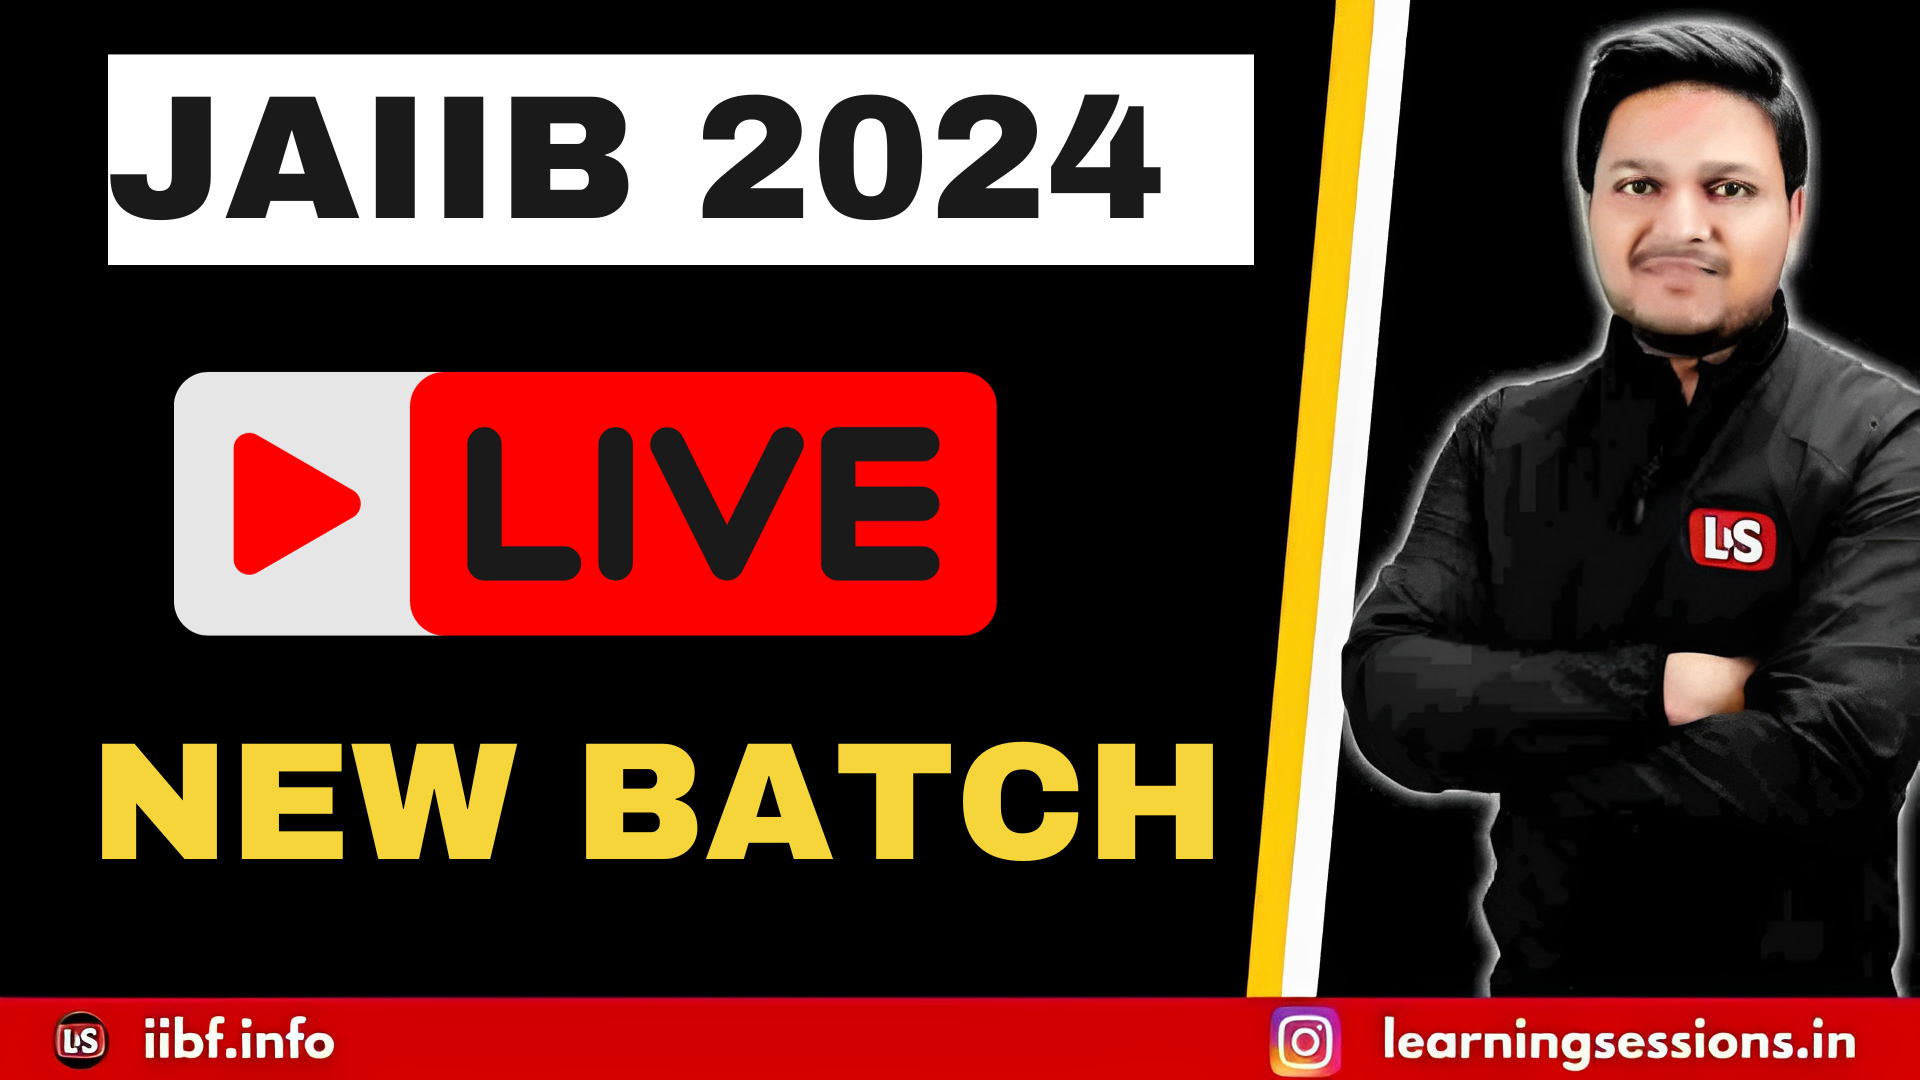 JAIIB 2024 Live batch